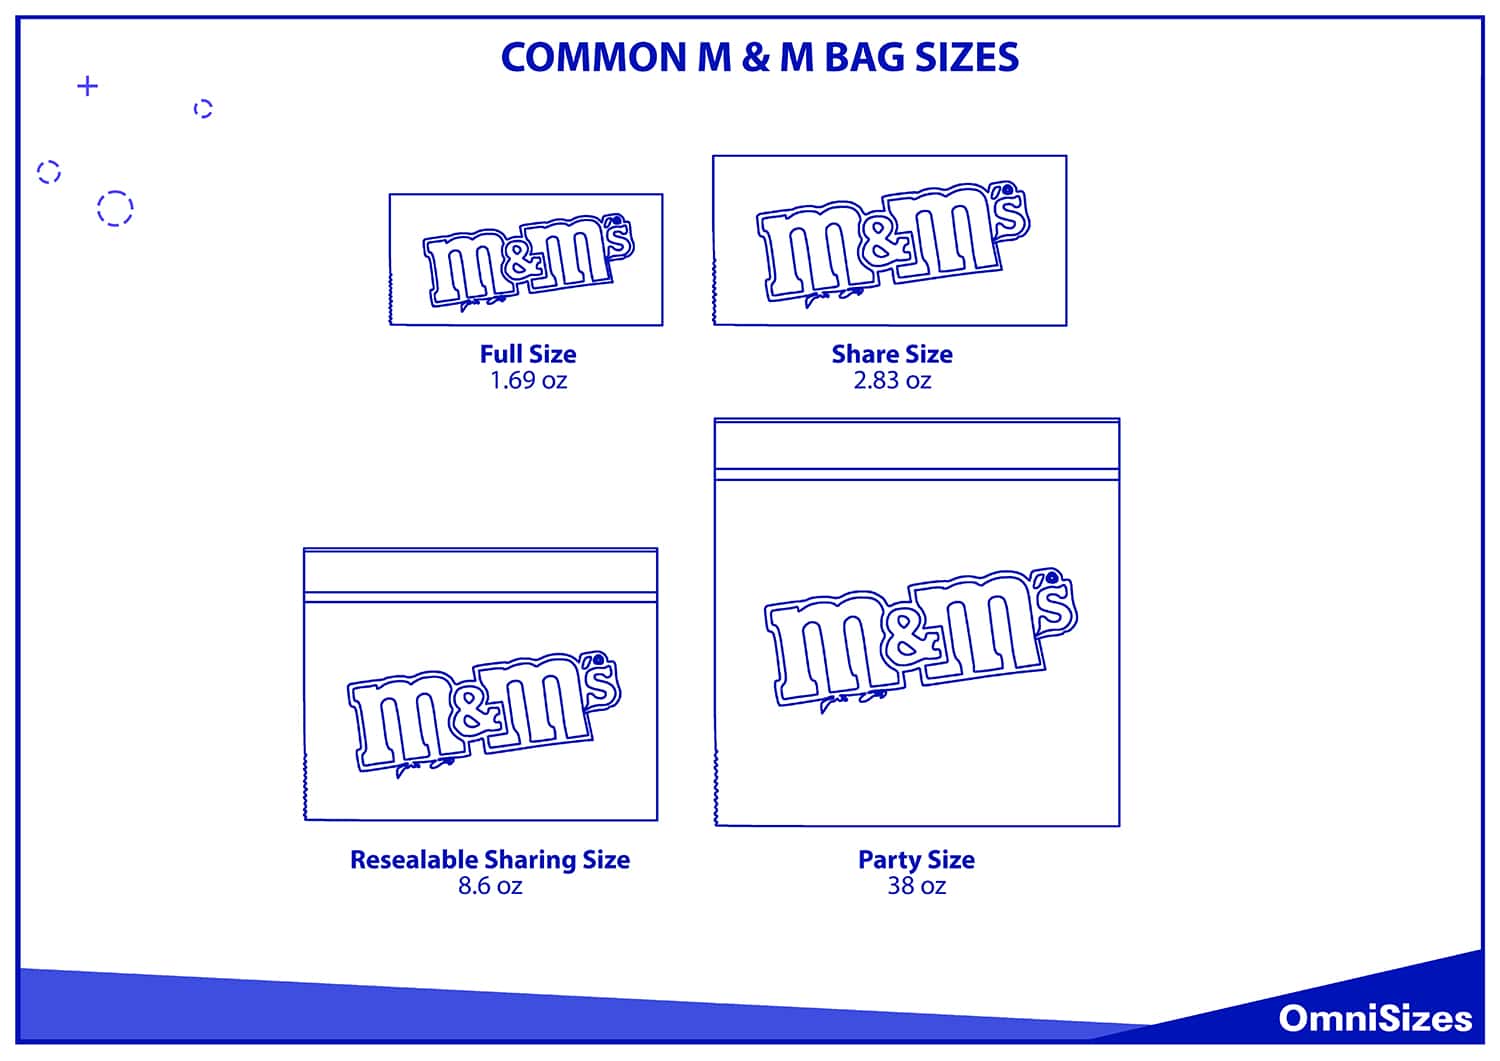 Common m & m bag sizes